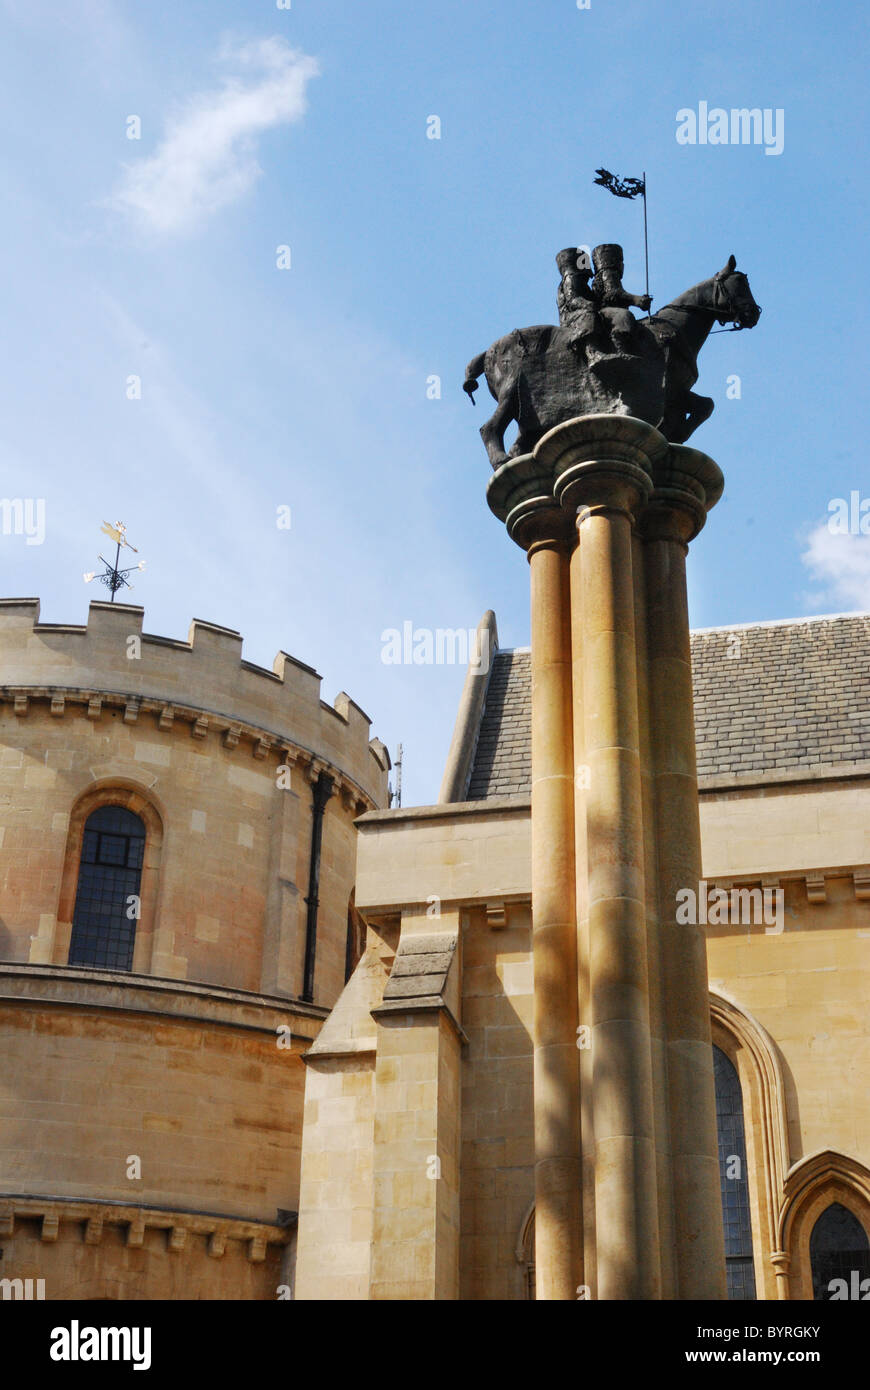 Une statue de deux chevaliers sur un cheval, l'emblème des Templiers, à l'extérieur de l'église du Temple à Londres Banque D'Images